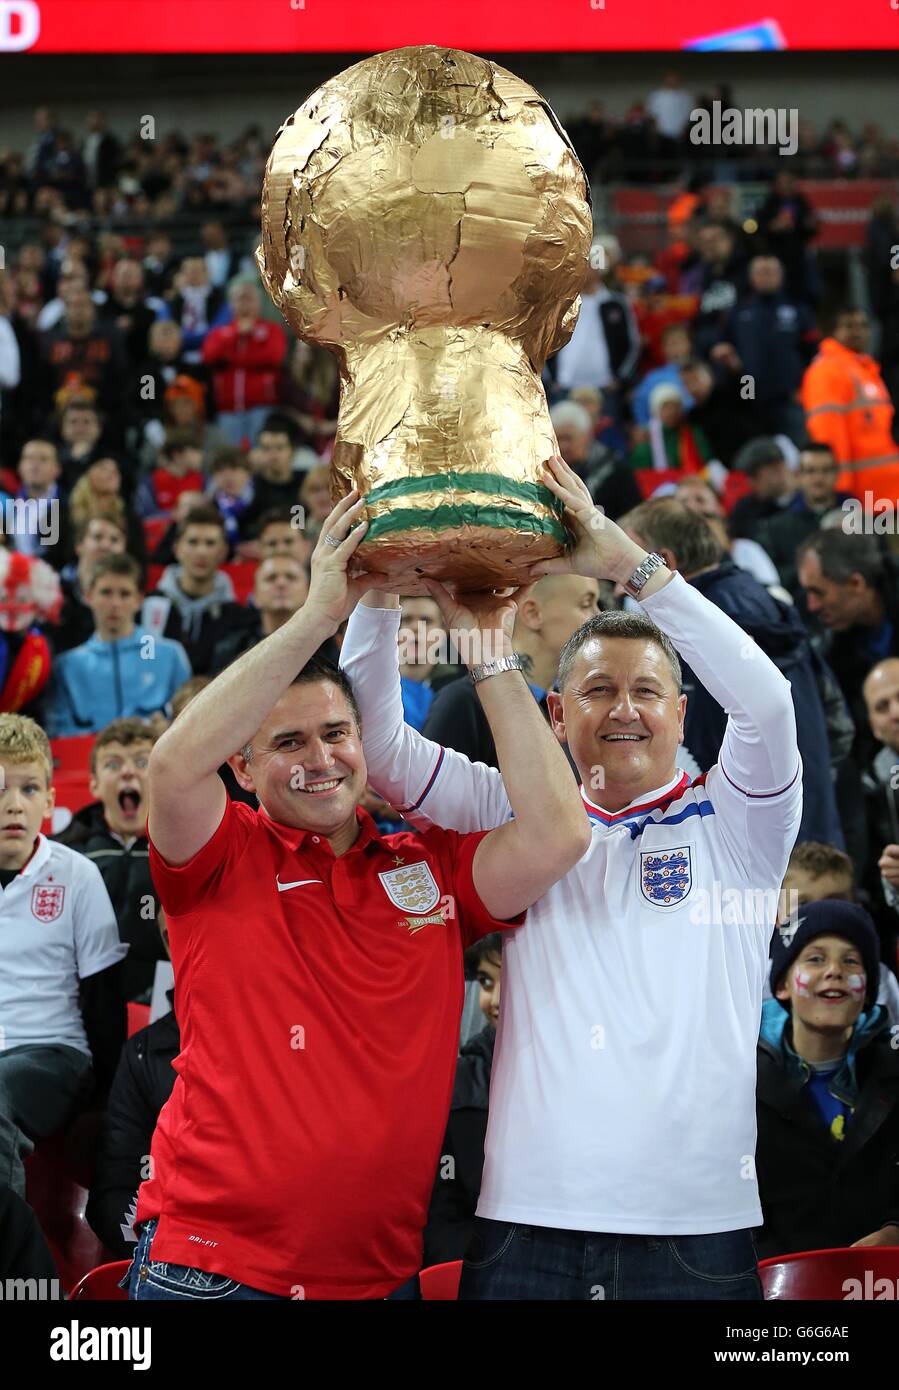 Calcio - Qualifiche Coppa del mondo FIFA - Gruppo H - Inghilterra / Montenegro - Stadio di Wembley. I fan dell'Inghilterra hanno in piedi un trofeo della Coppa del mondo fatto in casa Foto Stock